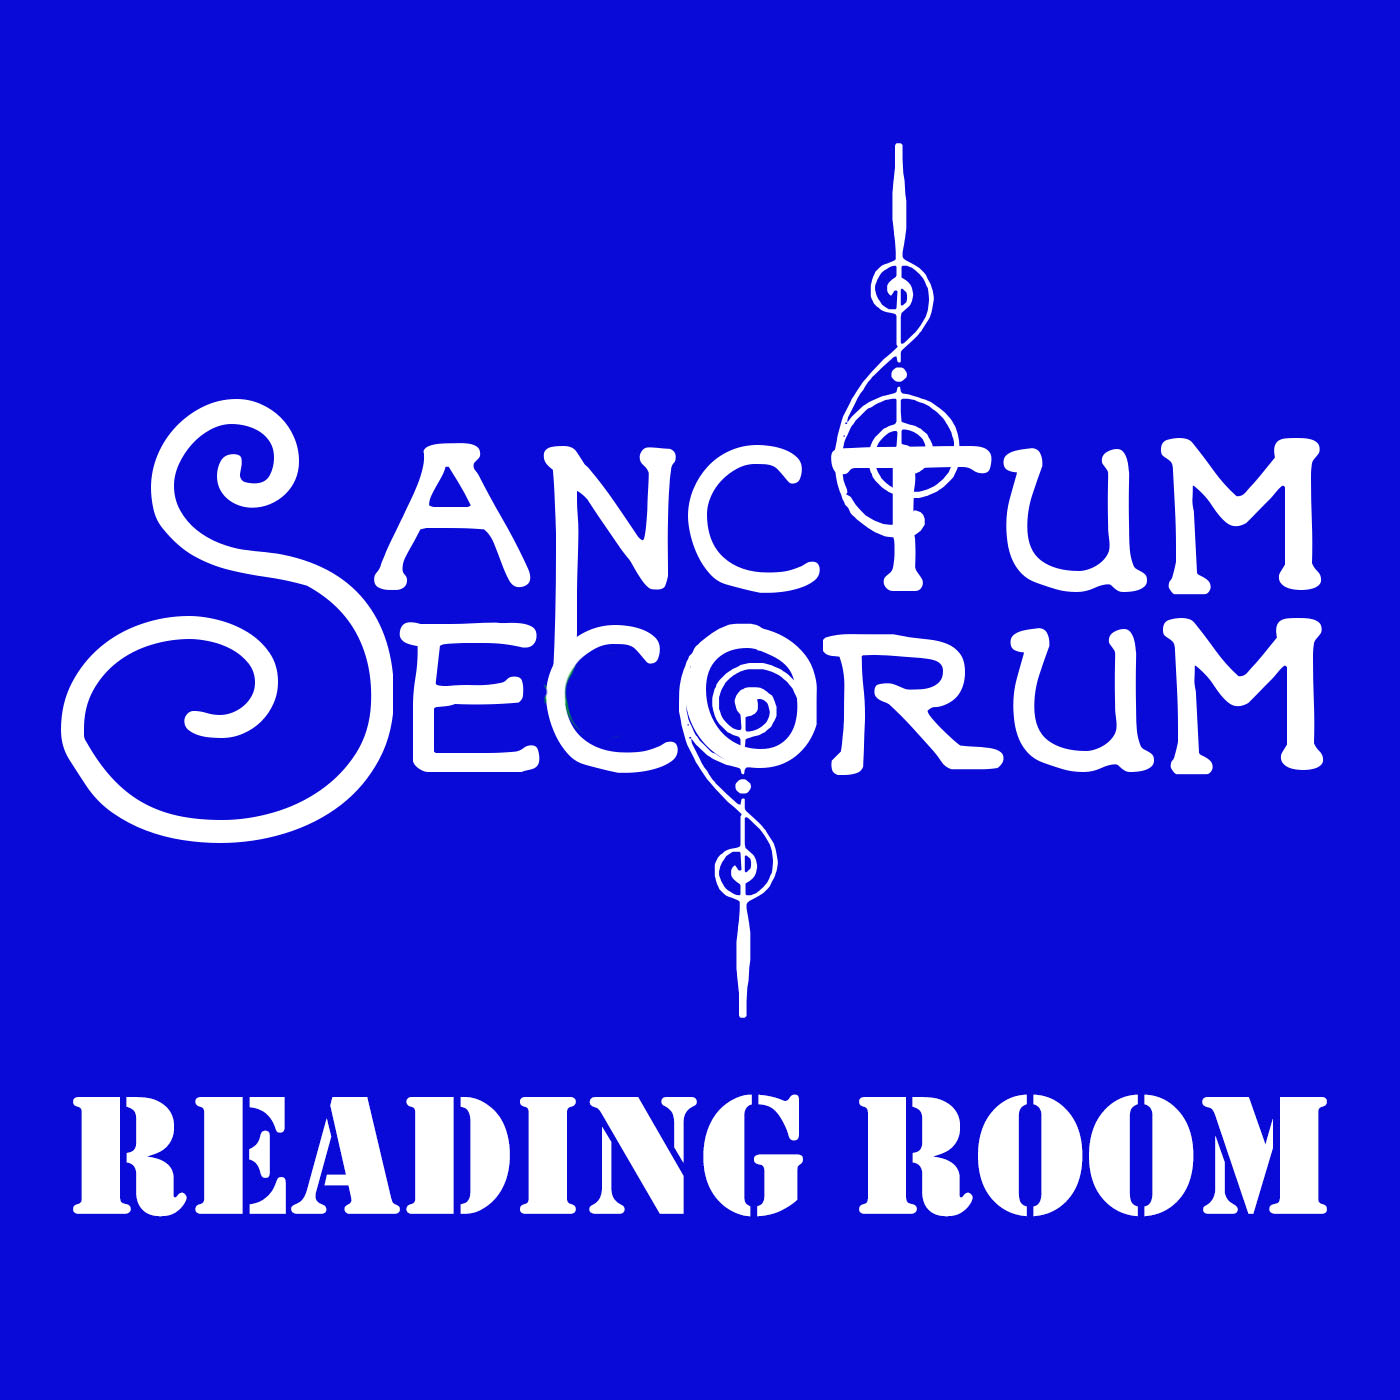 Sanctum Secorum Reading Room #05 - The Citadel of Fear